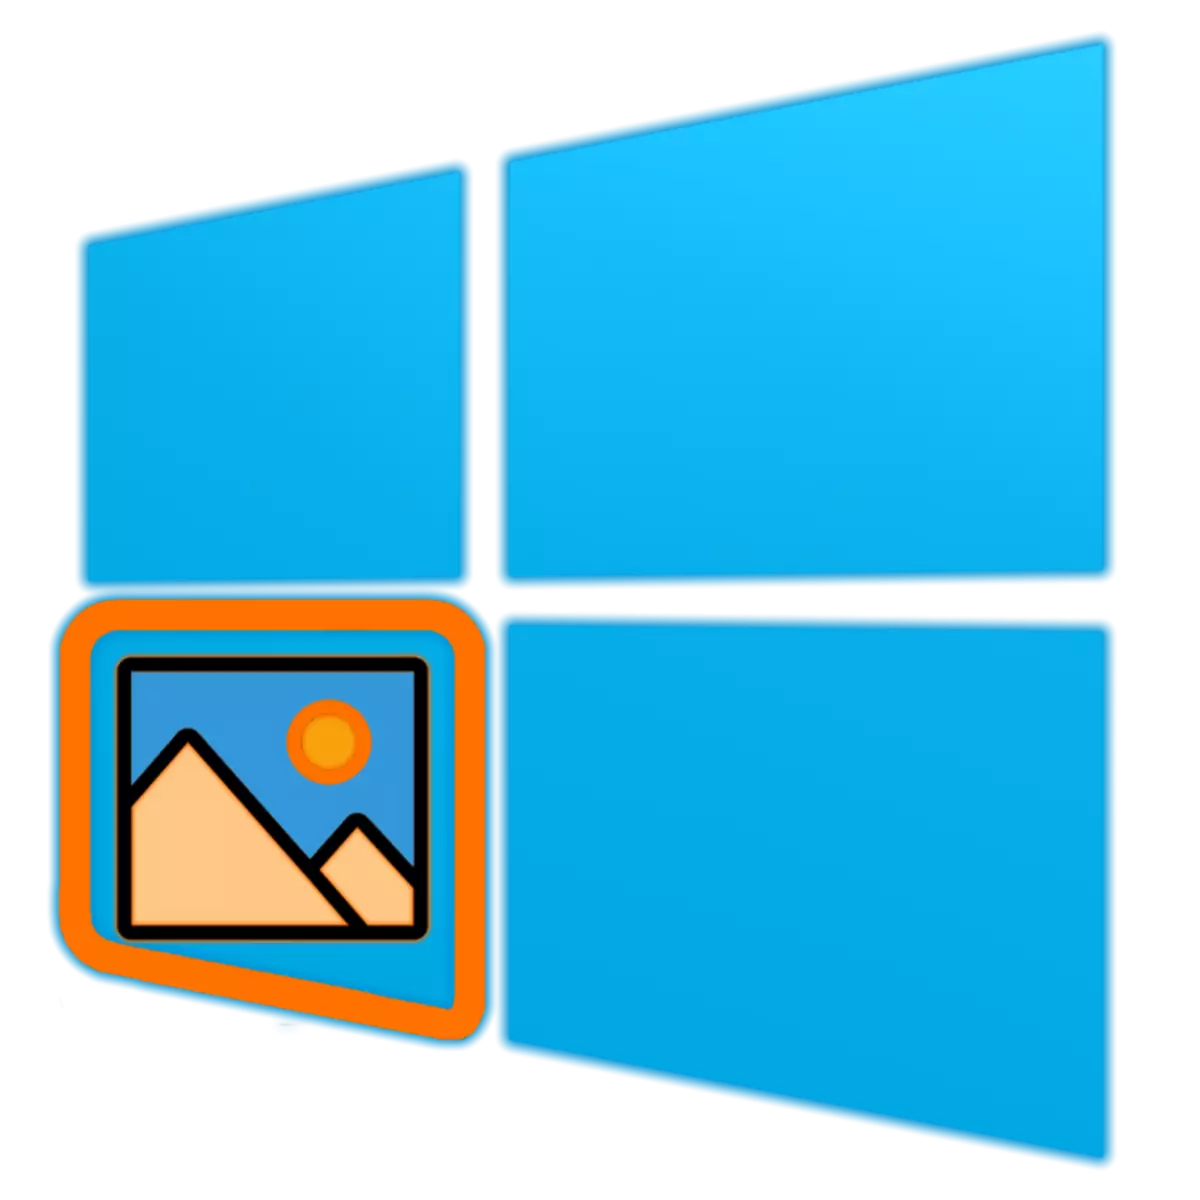 Paano Paganahin ang View ng Larawan sa Windows 10.